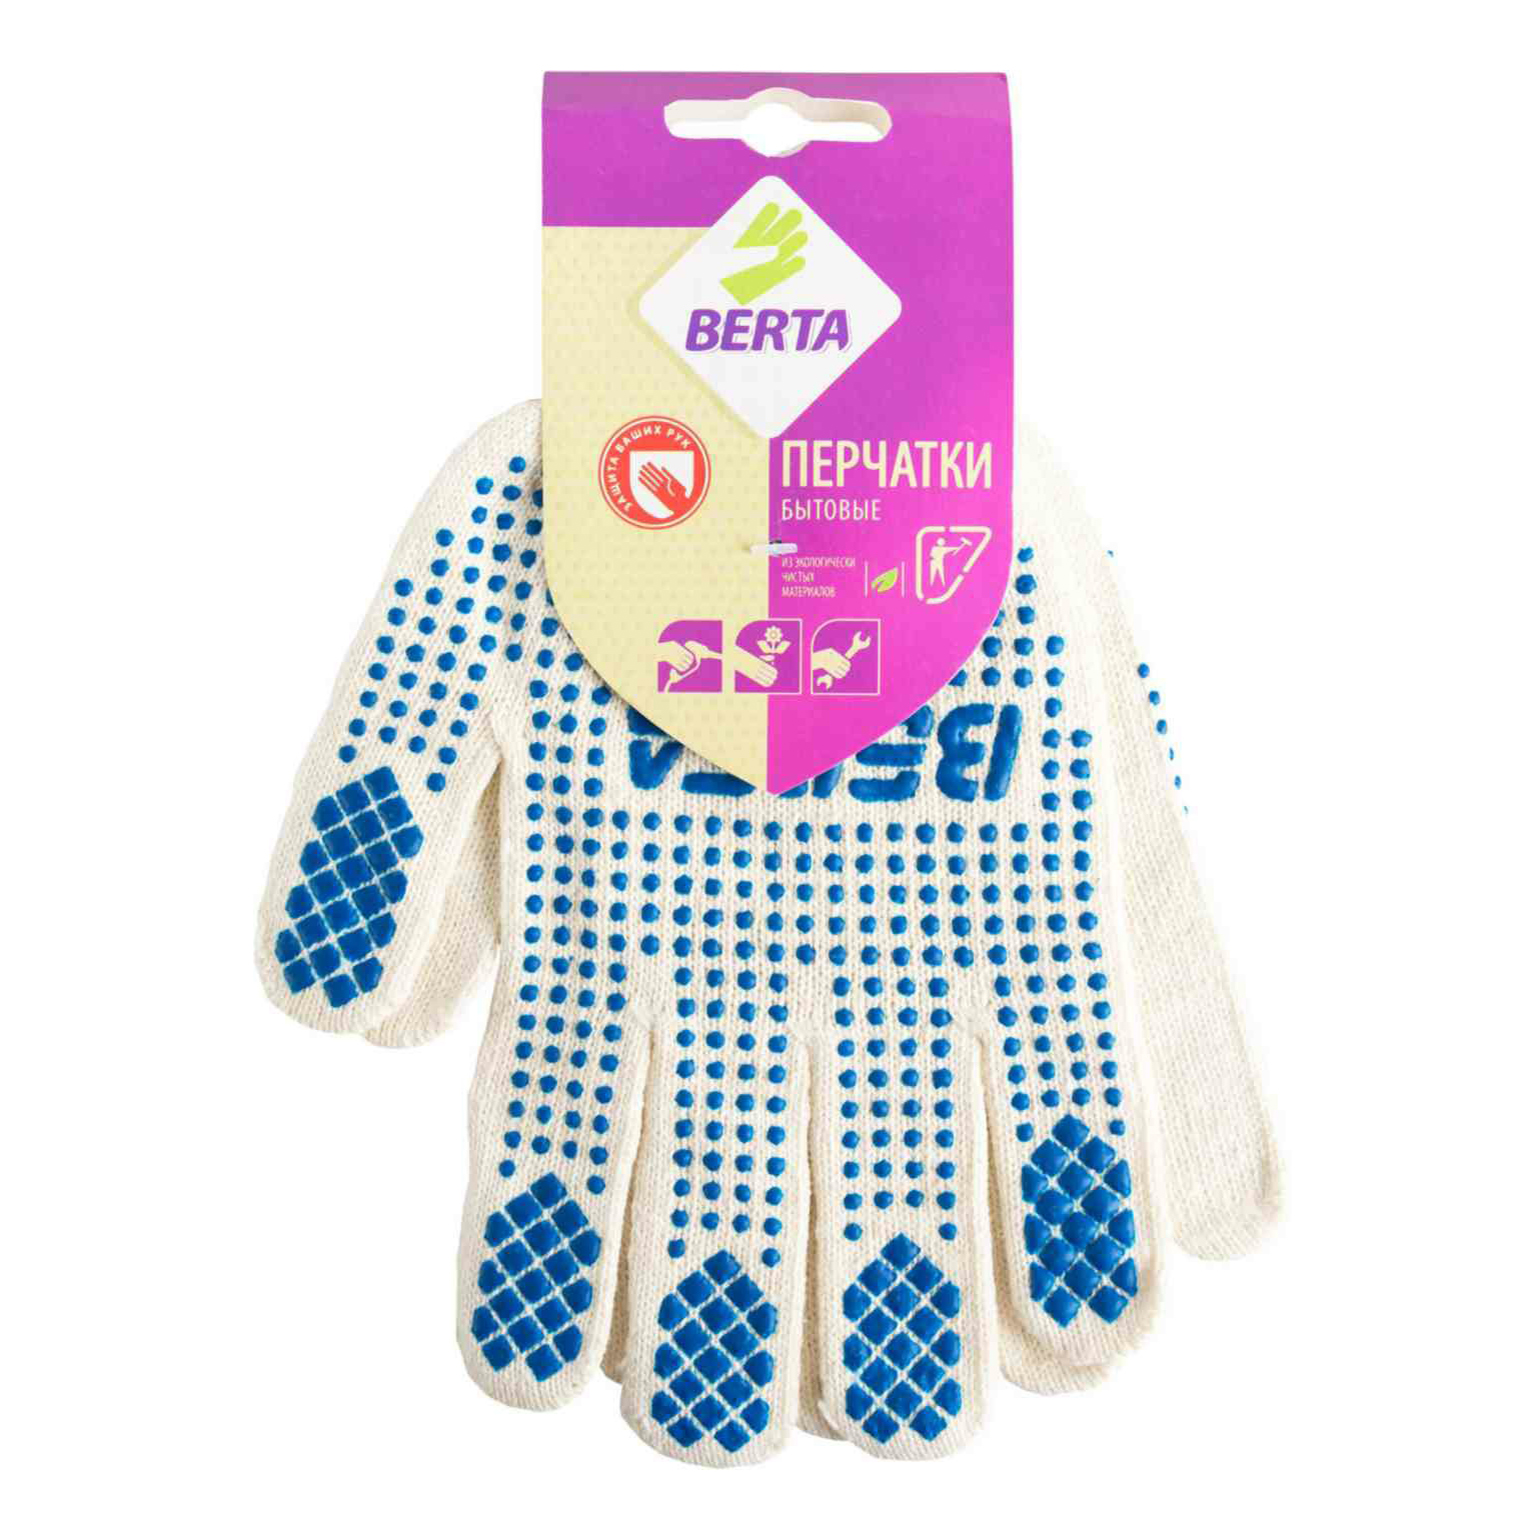 Перчатки Berta бытовые белые с синим